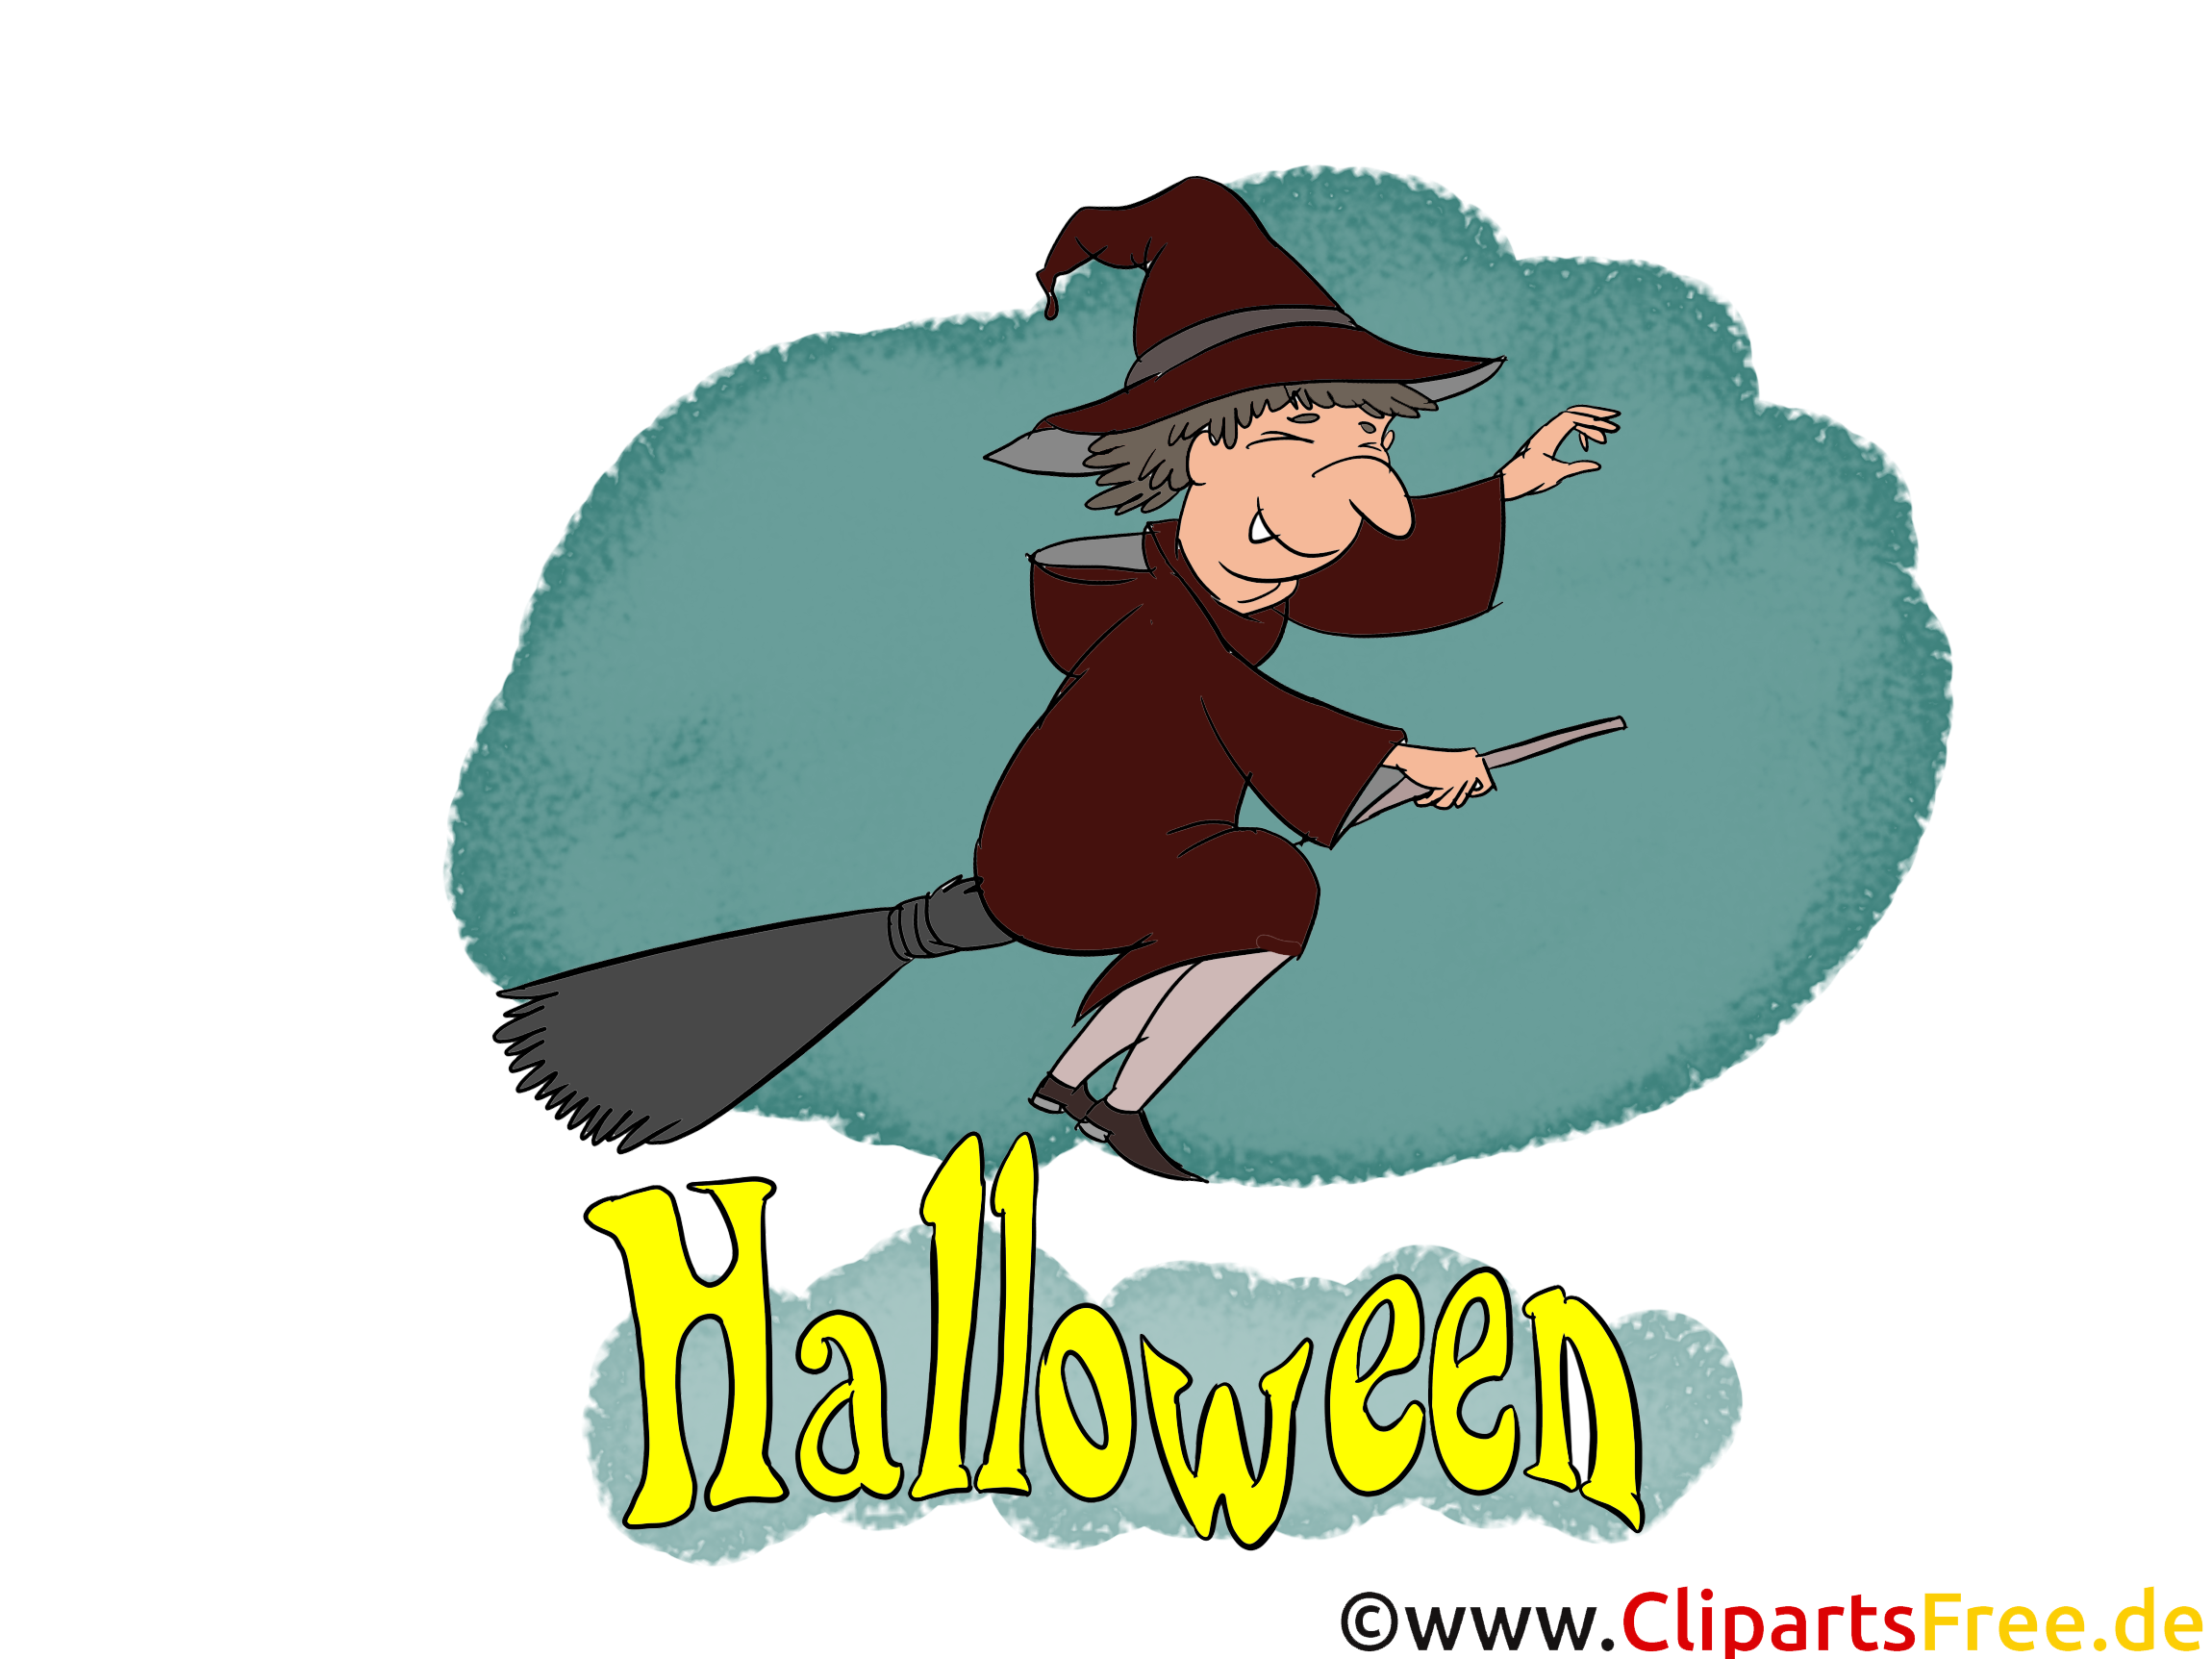 Vieille sorcière images gratuites – Halloween clipart